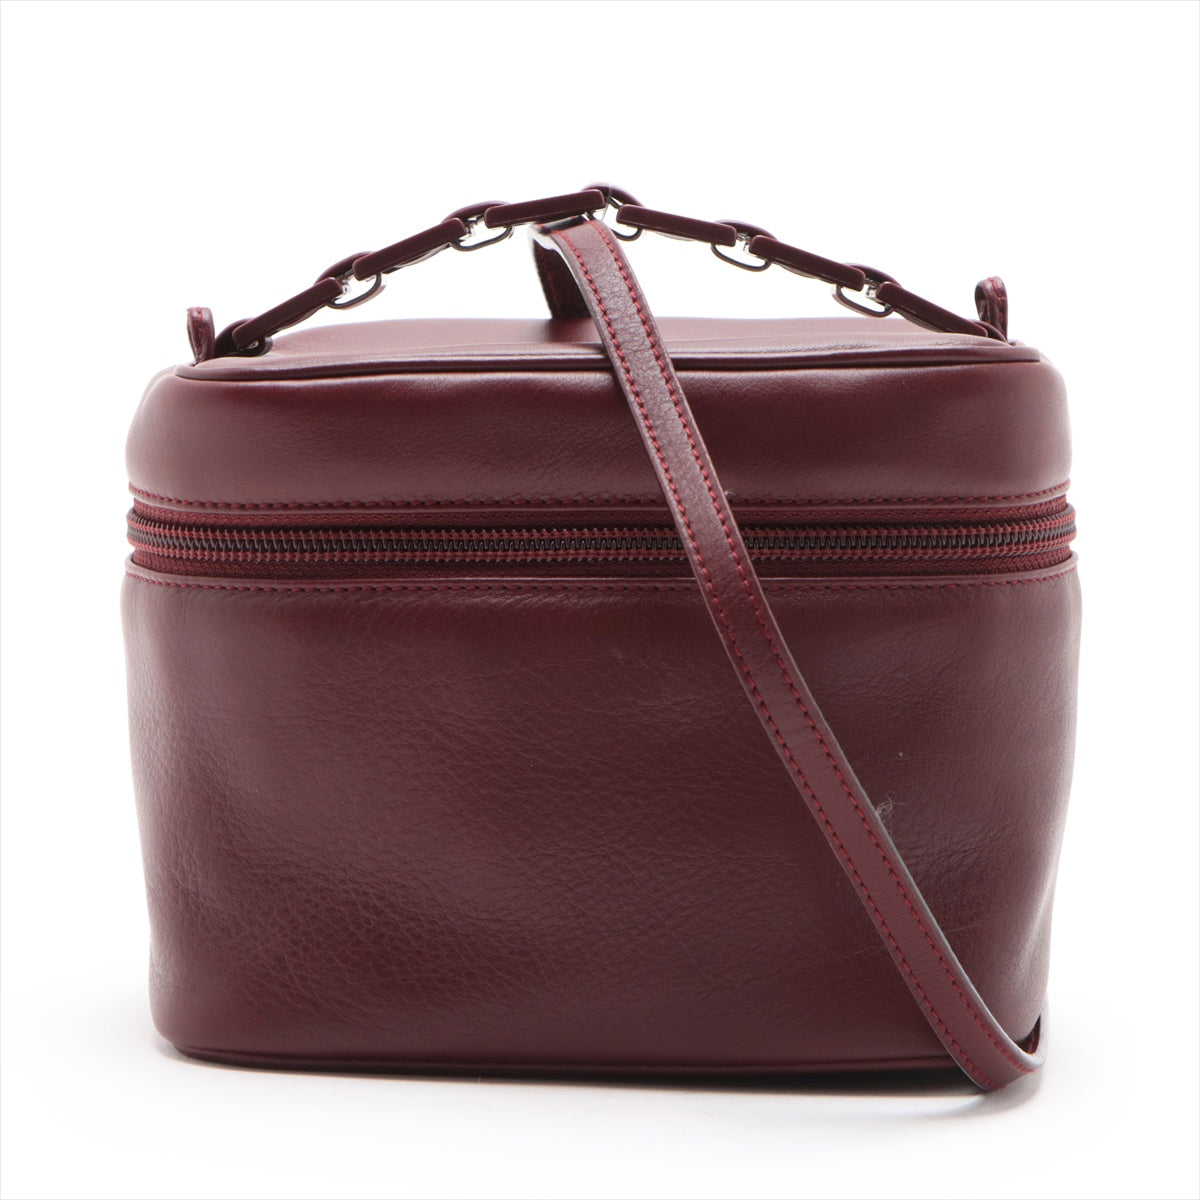 Ferragamo Leather 2 Way Shoulder Bag Bordeaux